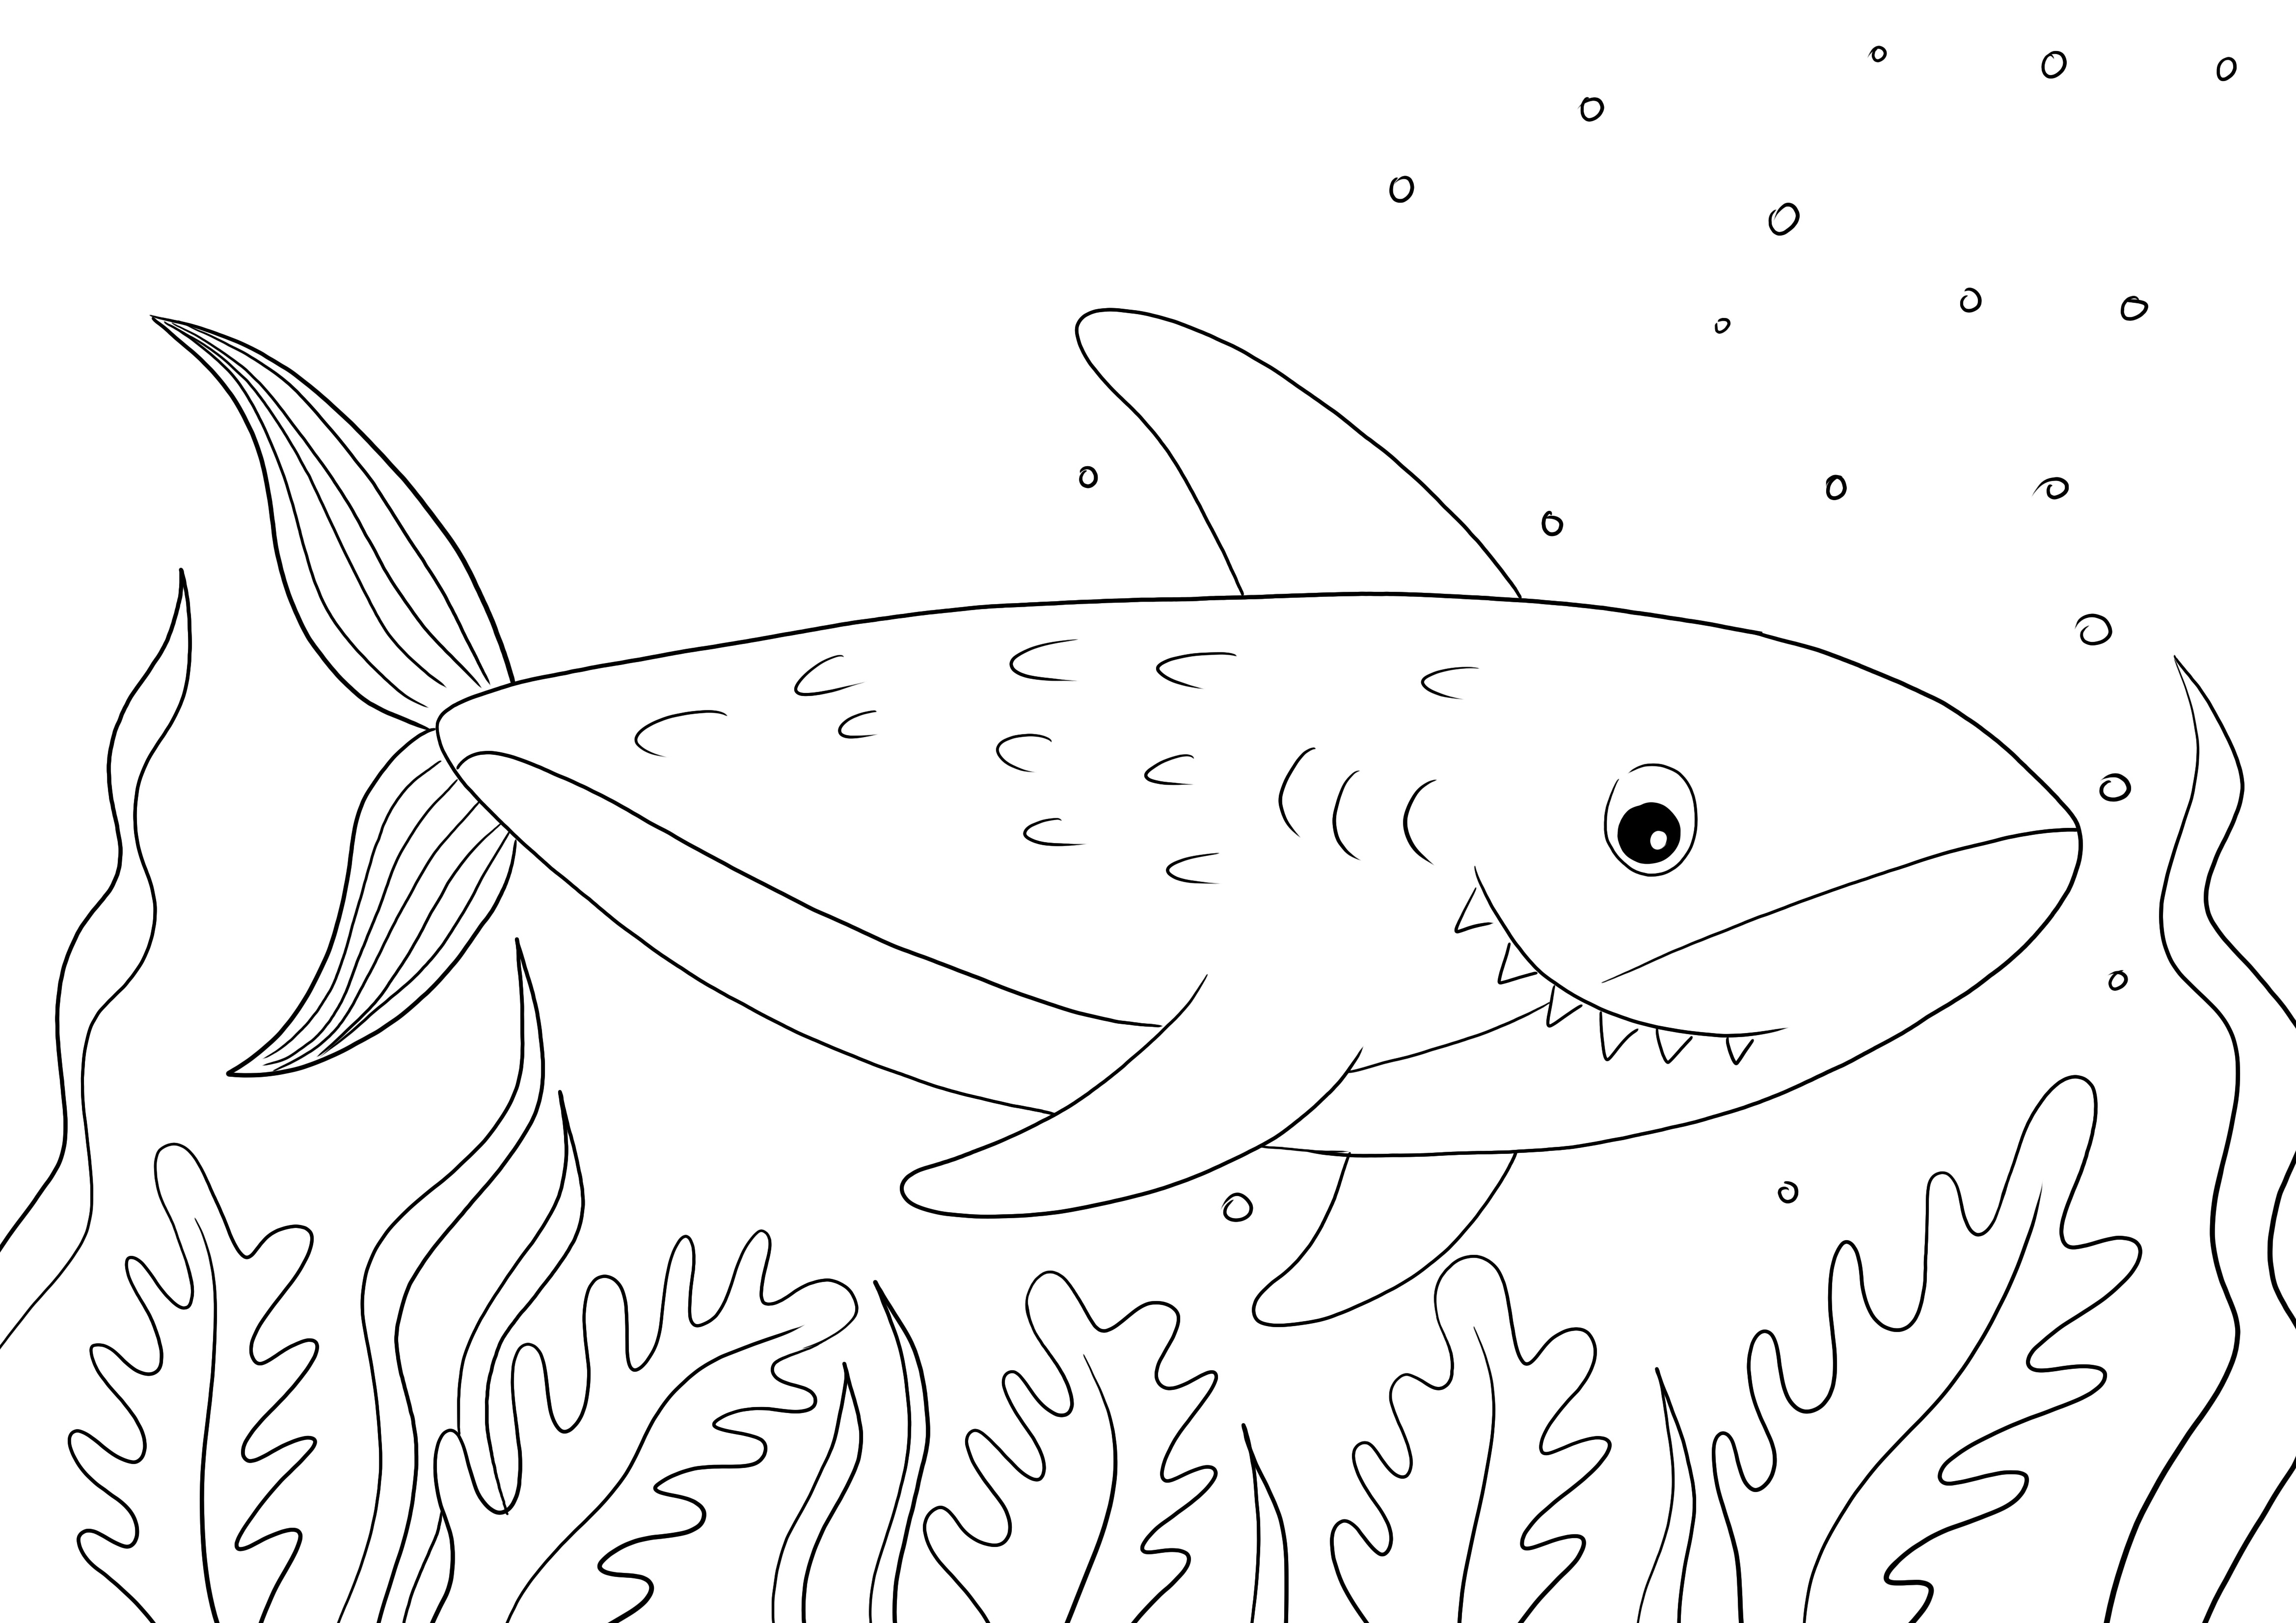 Stampa facile e gratuita di una pagina da colorare di Squalo per far conoscere ai bambini gli animali marini